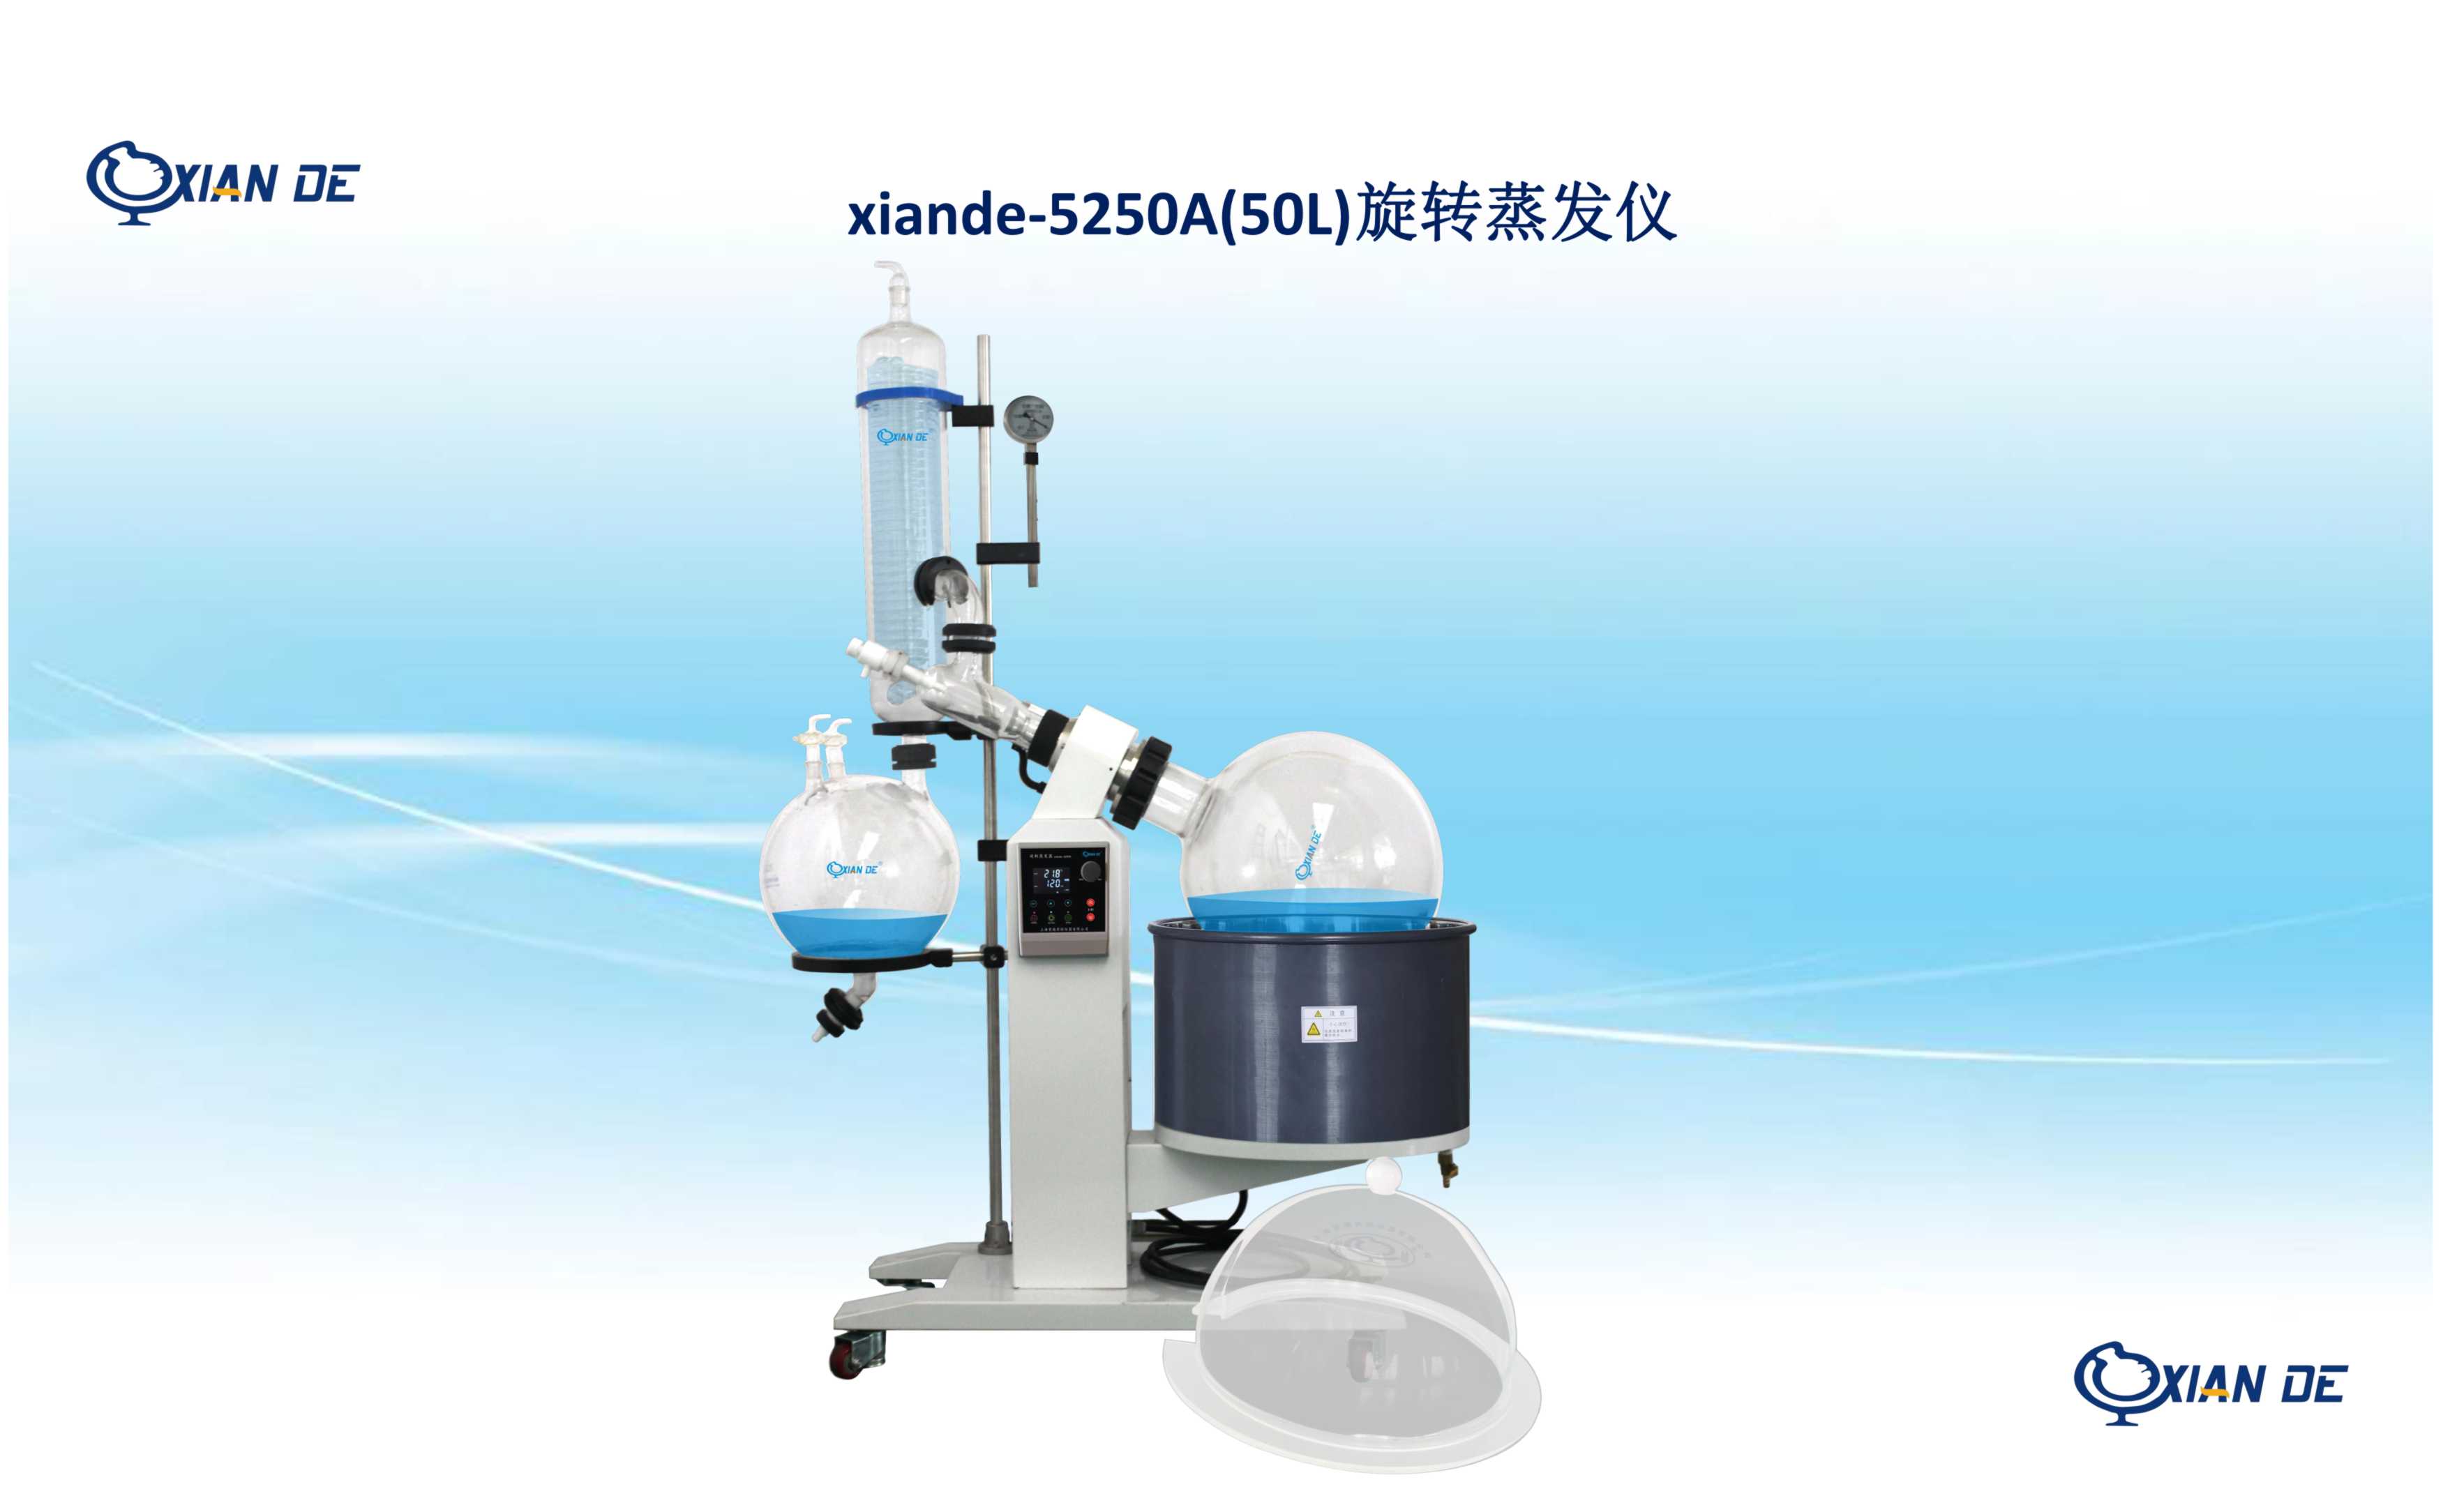 上海贤德xiande-5250a(xd-5250a)旋转蒸发仪/器